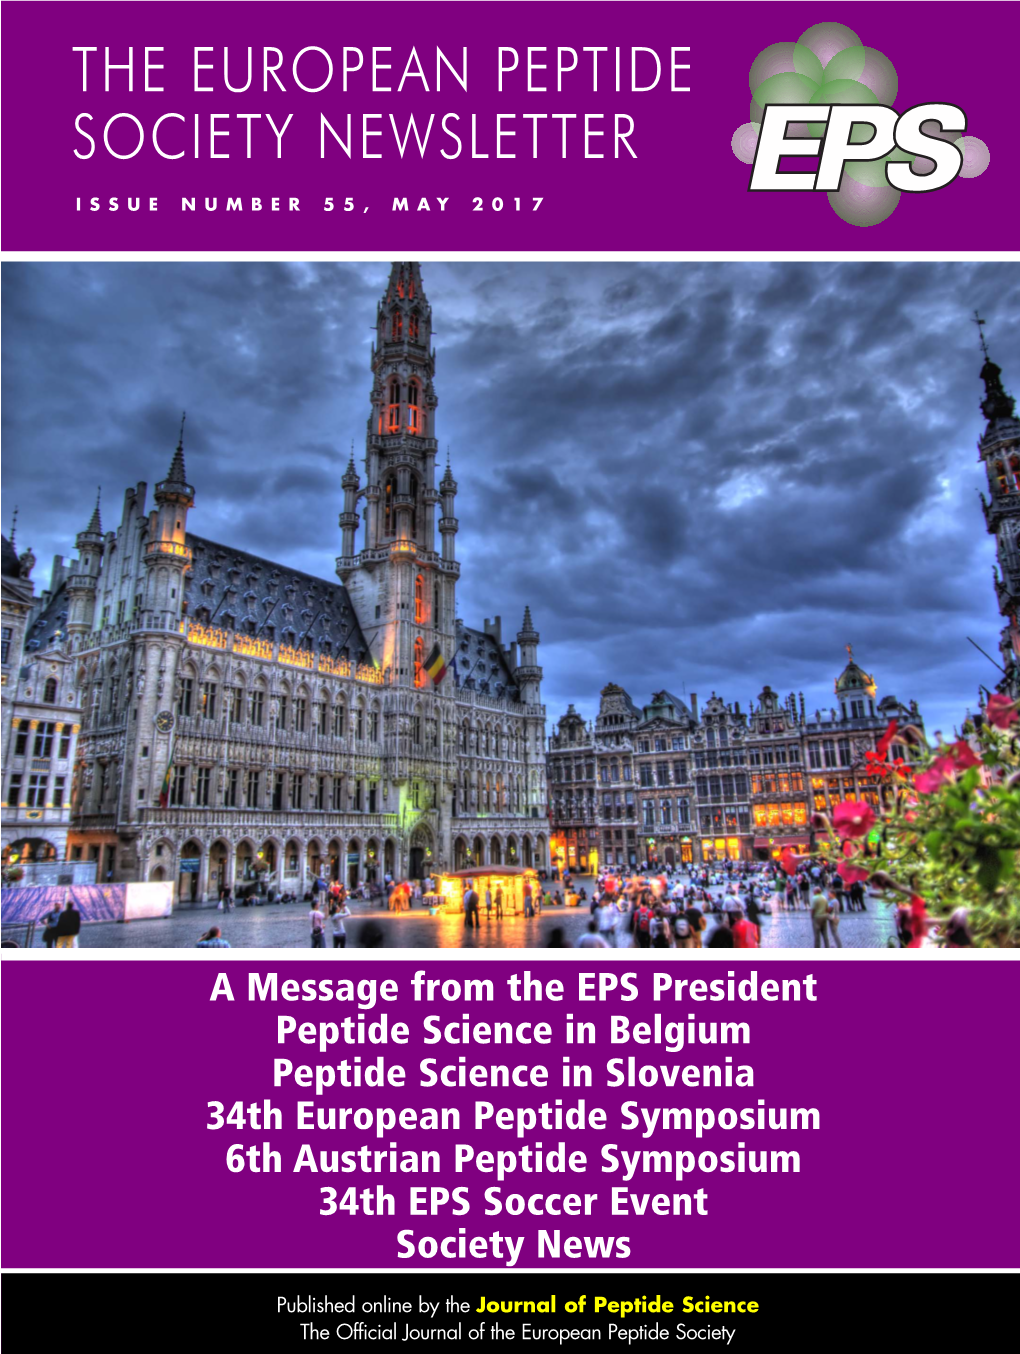 The European Peptide Society Newsletter